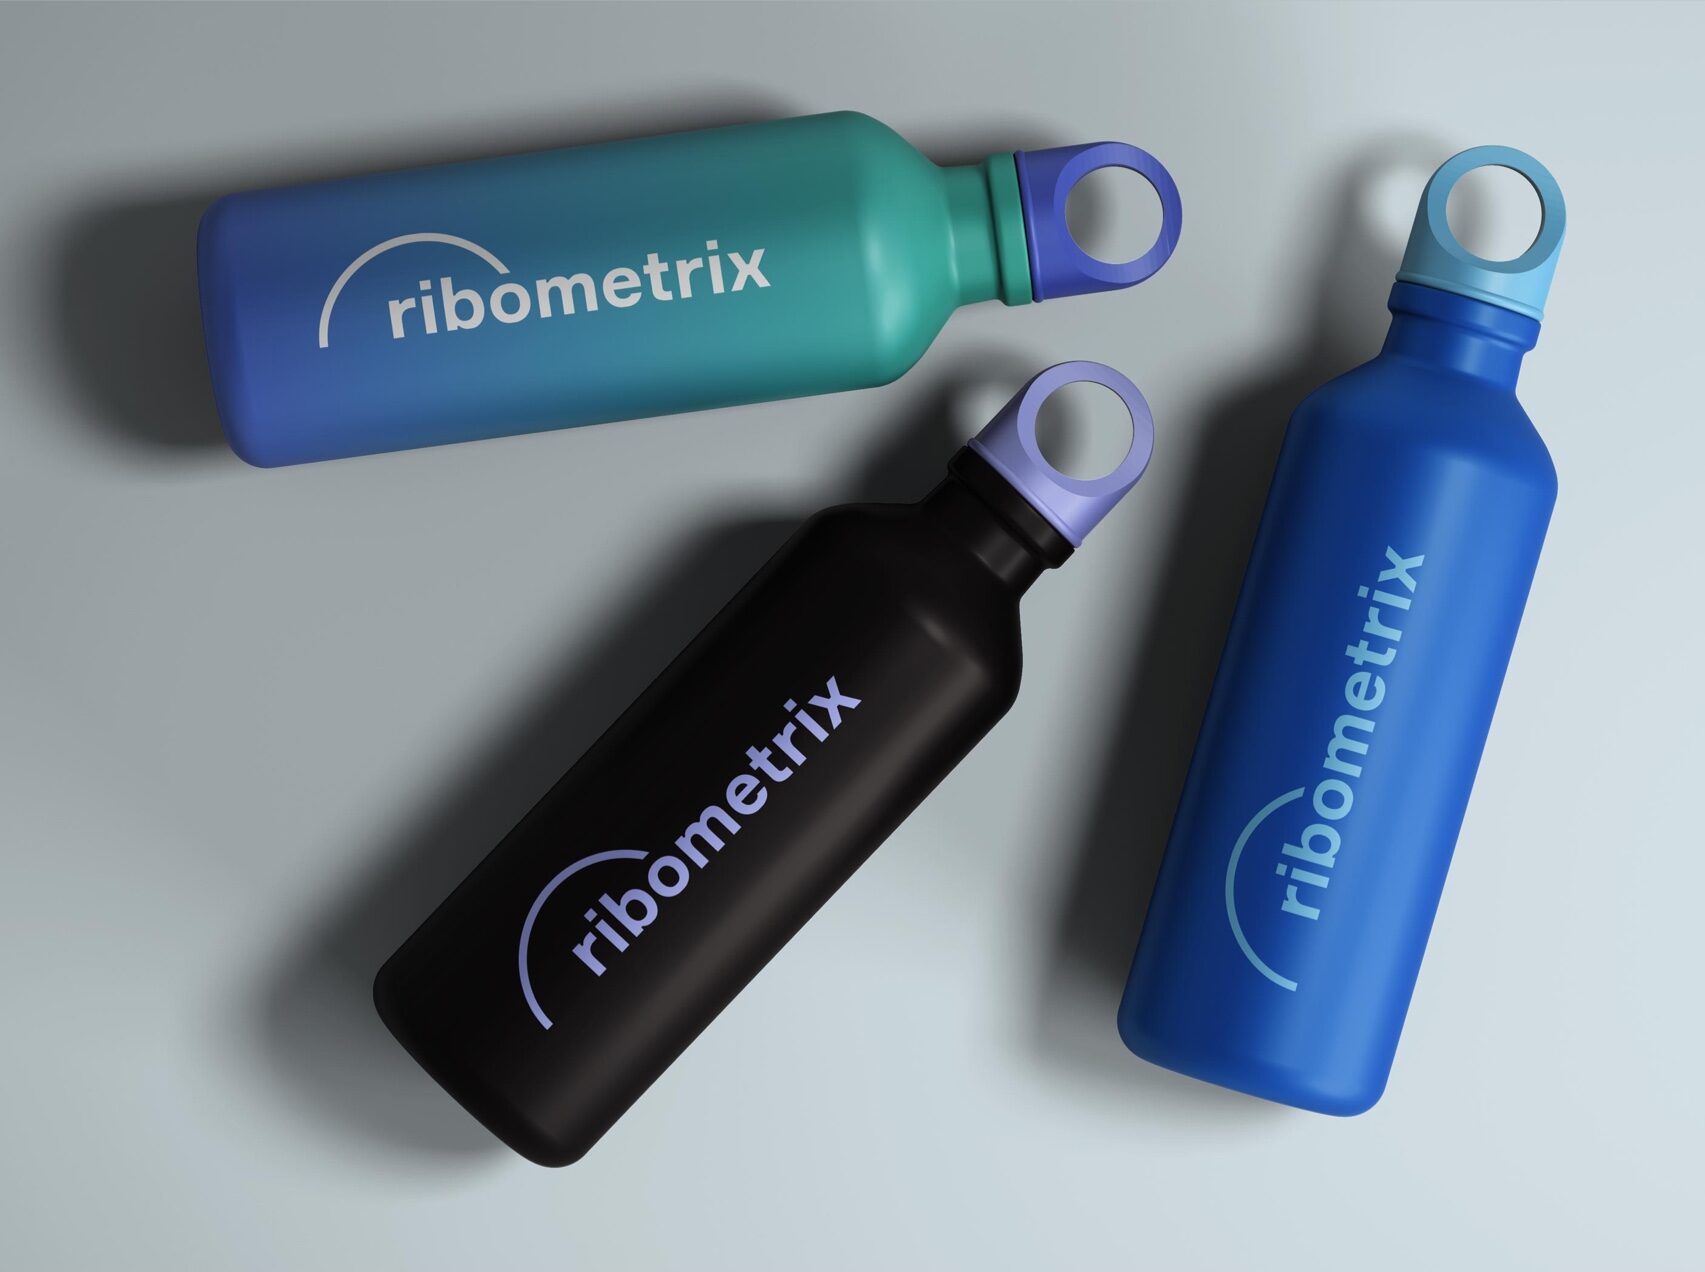 Ribometrix branded waterbottles